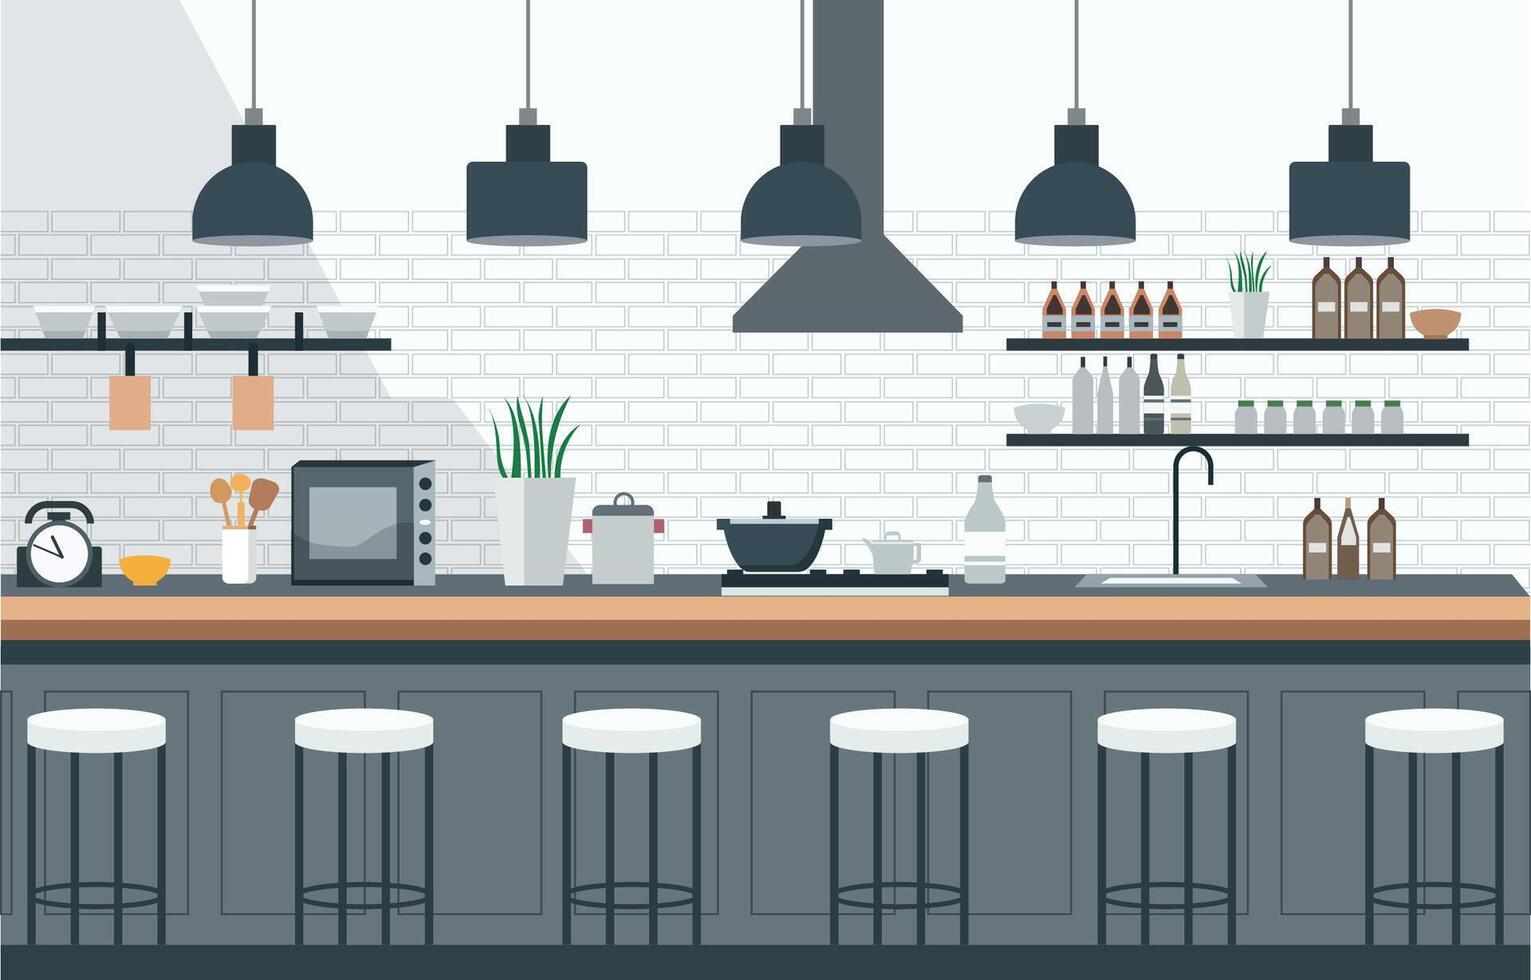 eben Design von Küche im Restaurant mit Küche Utensilien und Kunde Stühle vektor